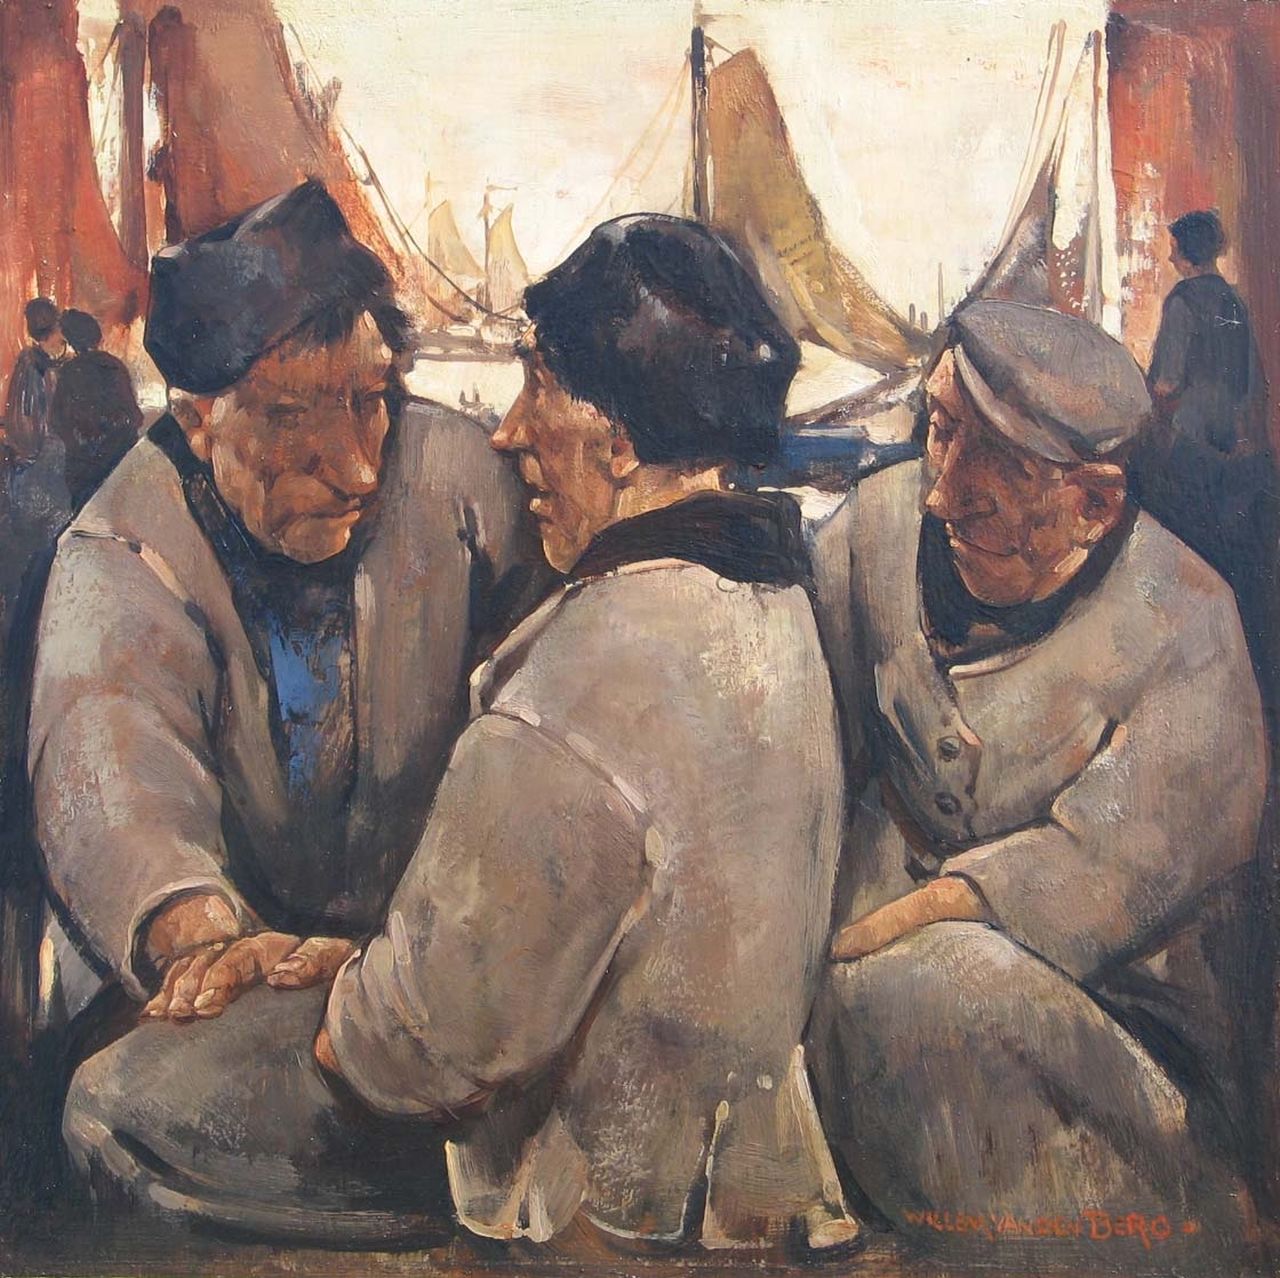 Berg W.H. van den | 'Willem' Hendrik van den Berg, Fishermen from Volendam, oil on panel 25.5 x 25.5 cm, signed l.r.